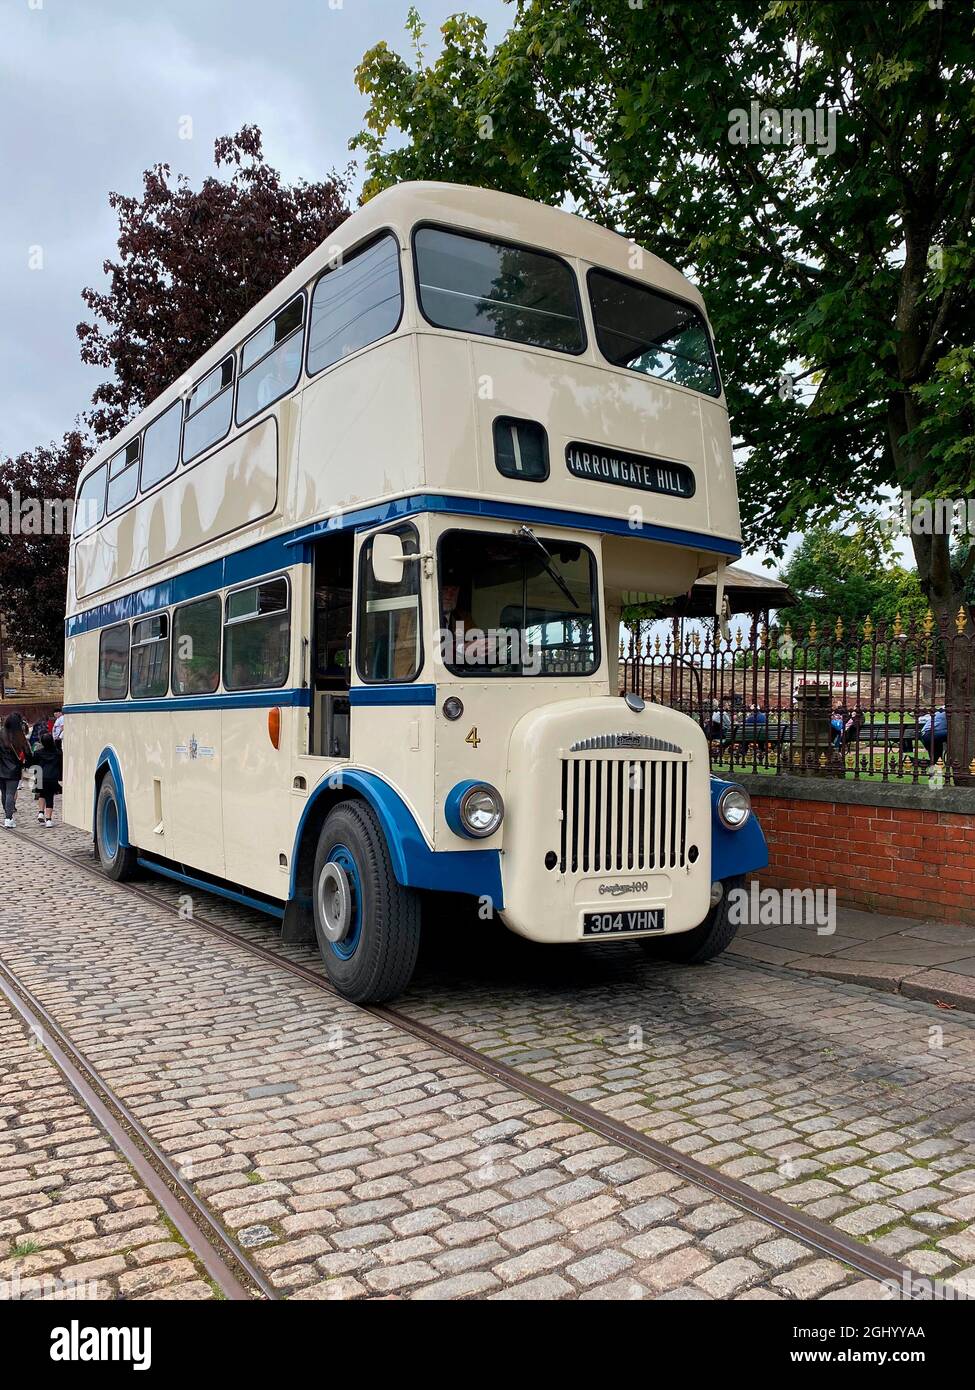 Daimler Gardner 100 Double Decker bus - Beamish Open Air Museum à Northumberland dans le nord-est de l'Angleterre. Banque D'Images